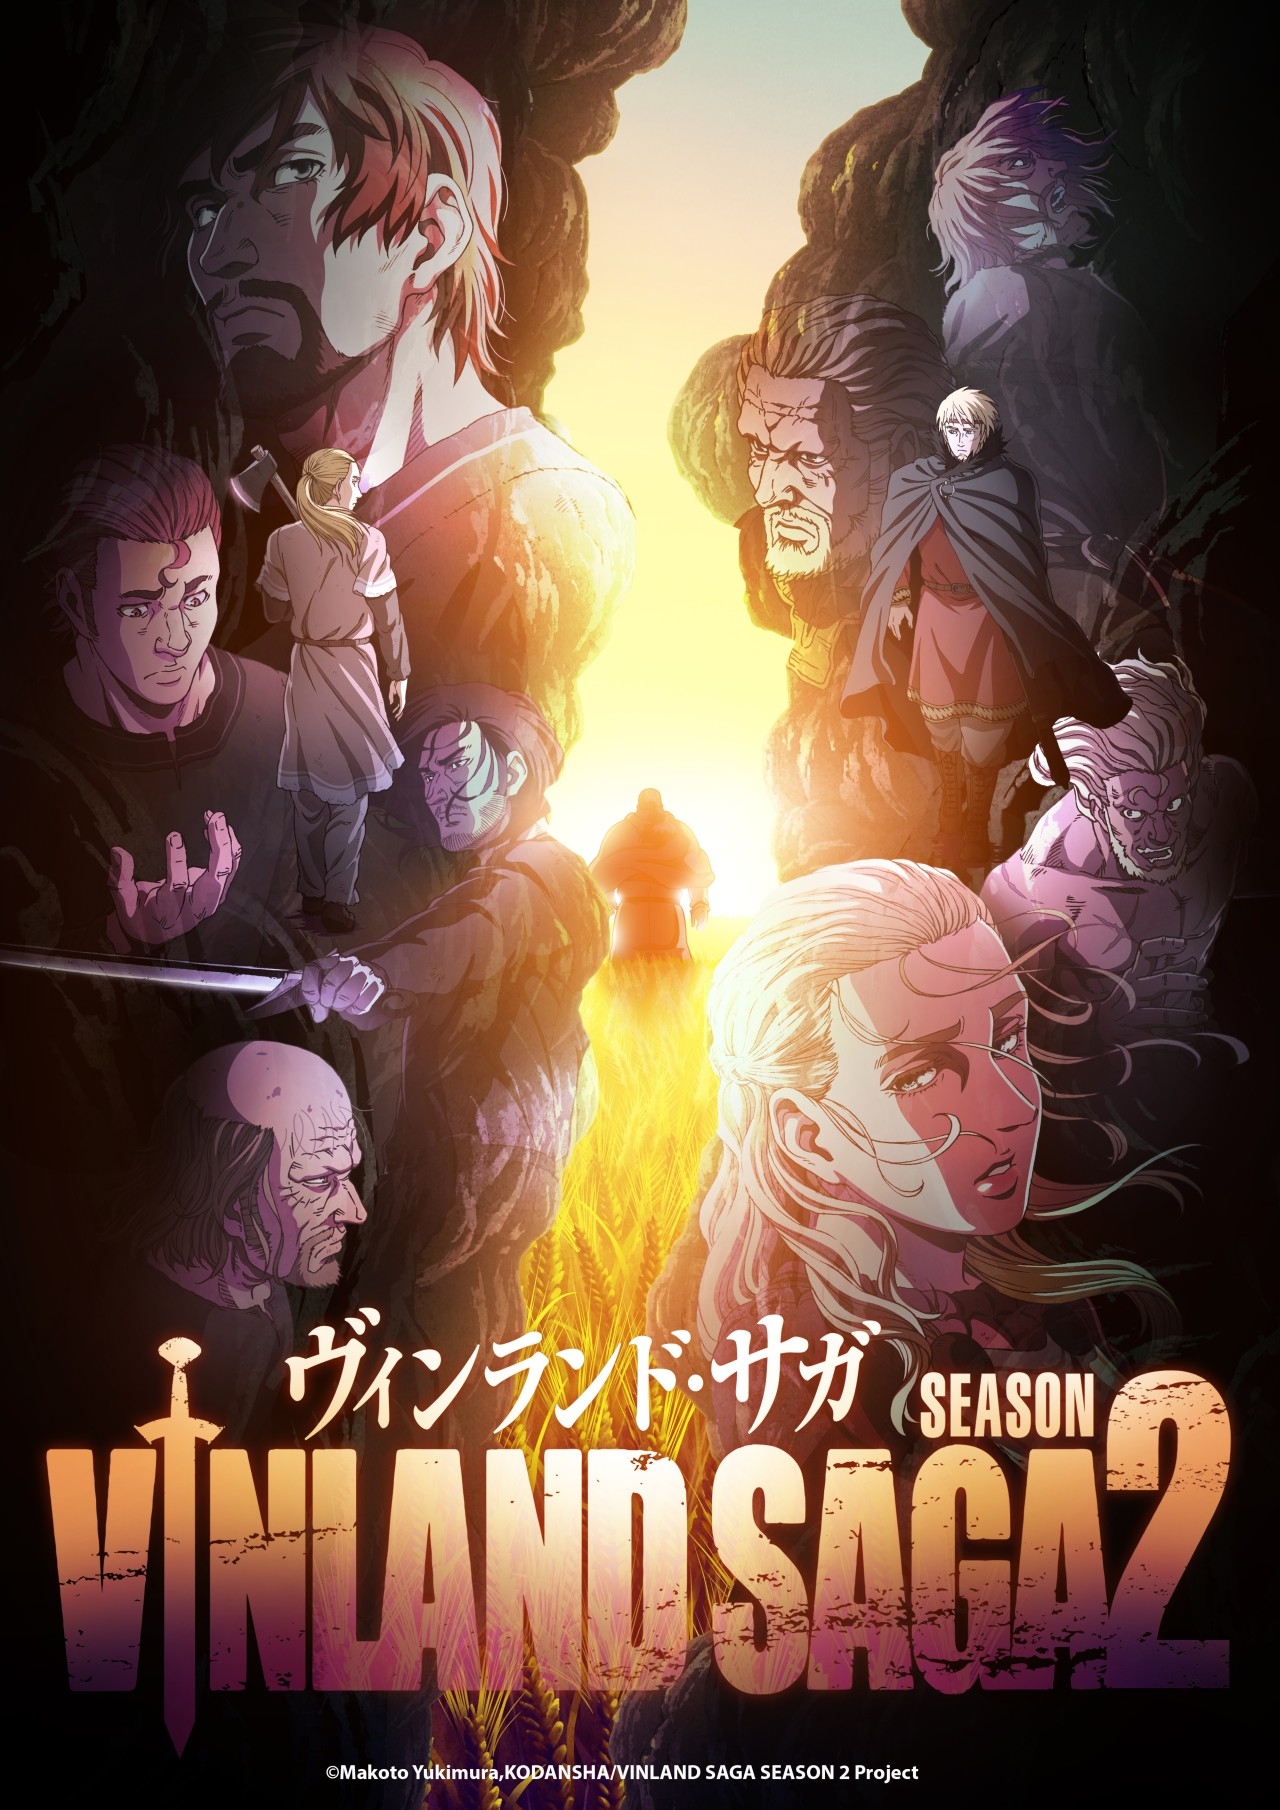 Vinland Saga Season 2 Episode 8 Release Date & Time